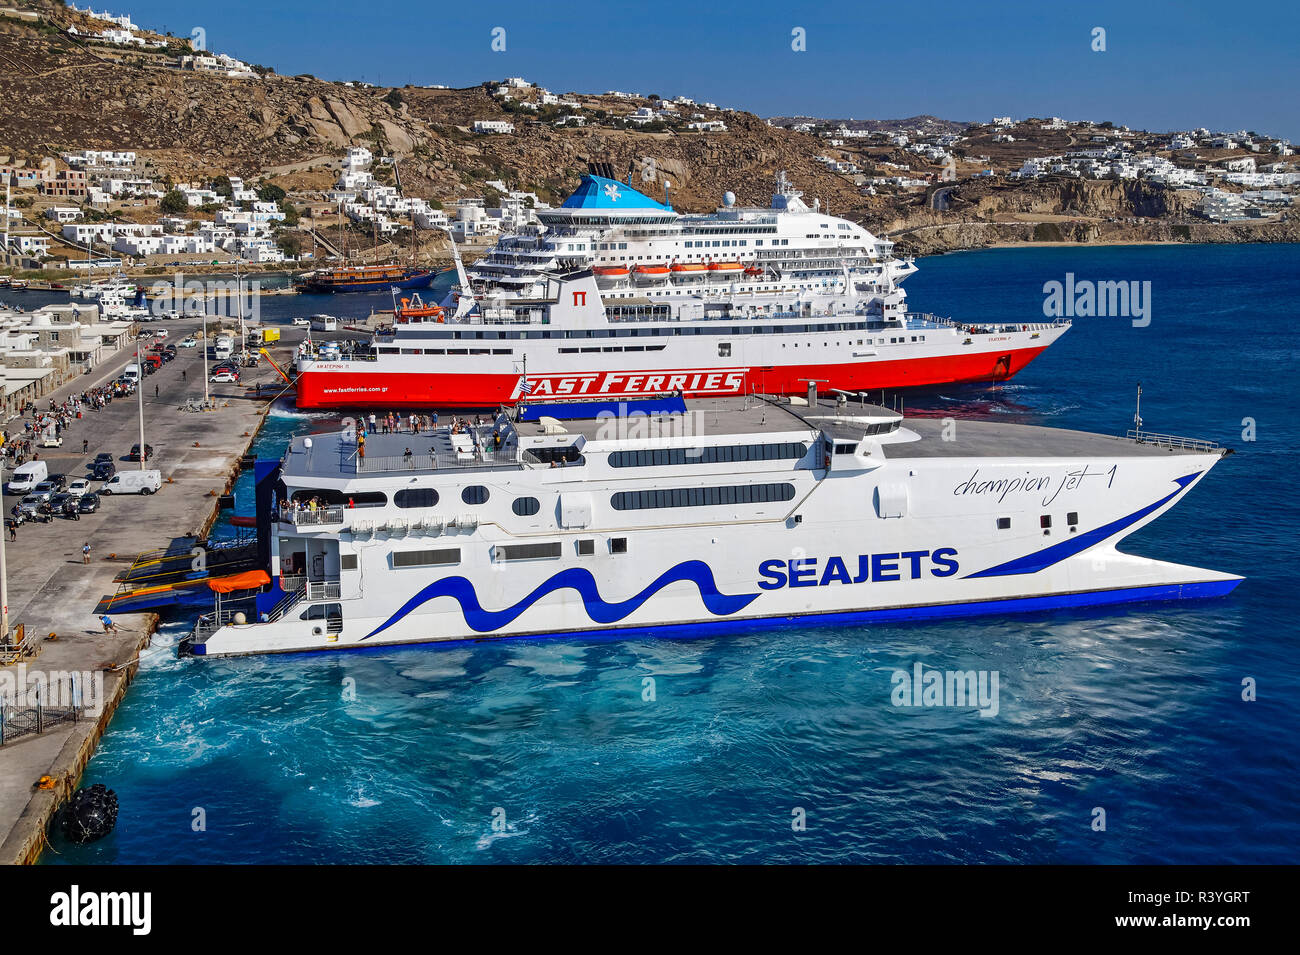 Des ferries et des navires de croisière au port de Mykonos Mykonos island sur dans le groupe des Cyclades dans la mer Égée Grèce Banque D'Images